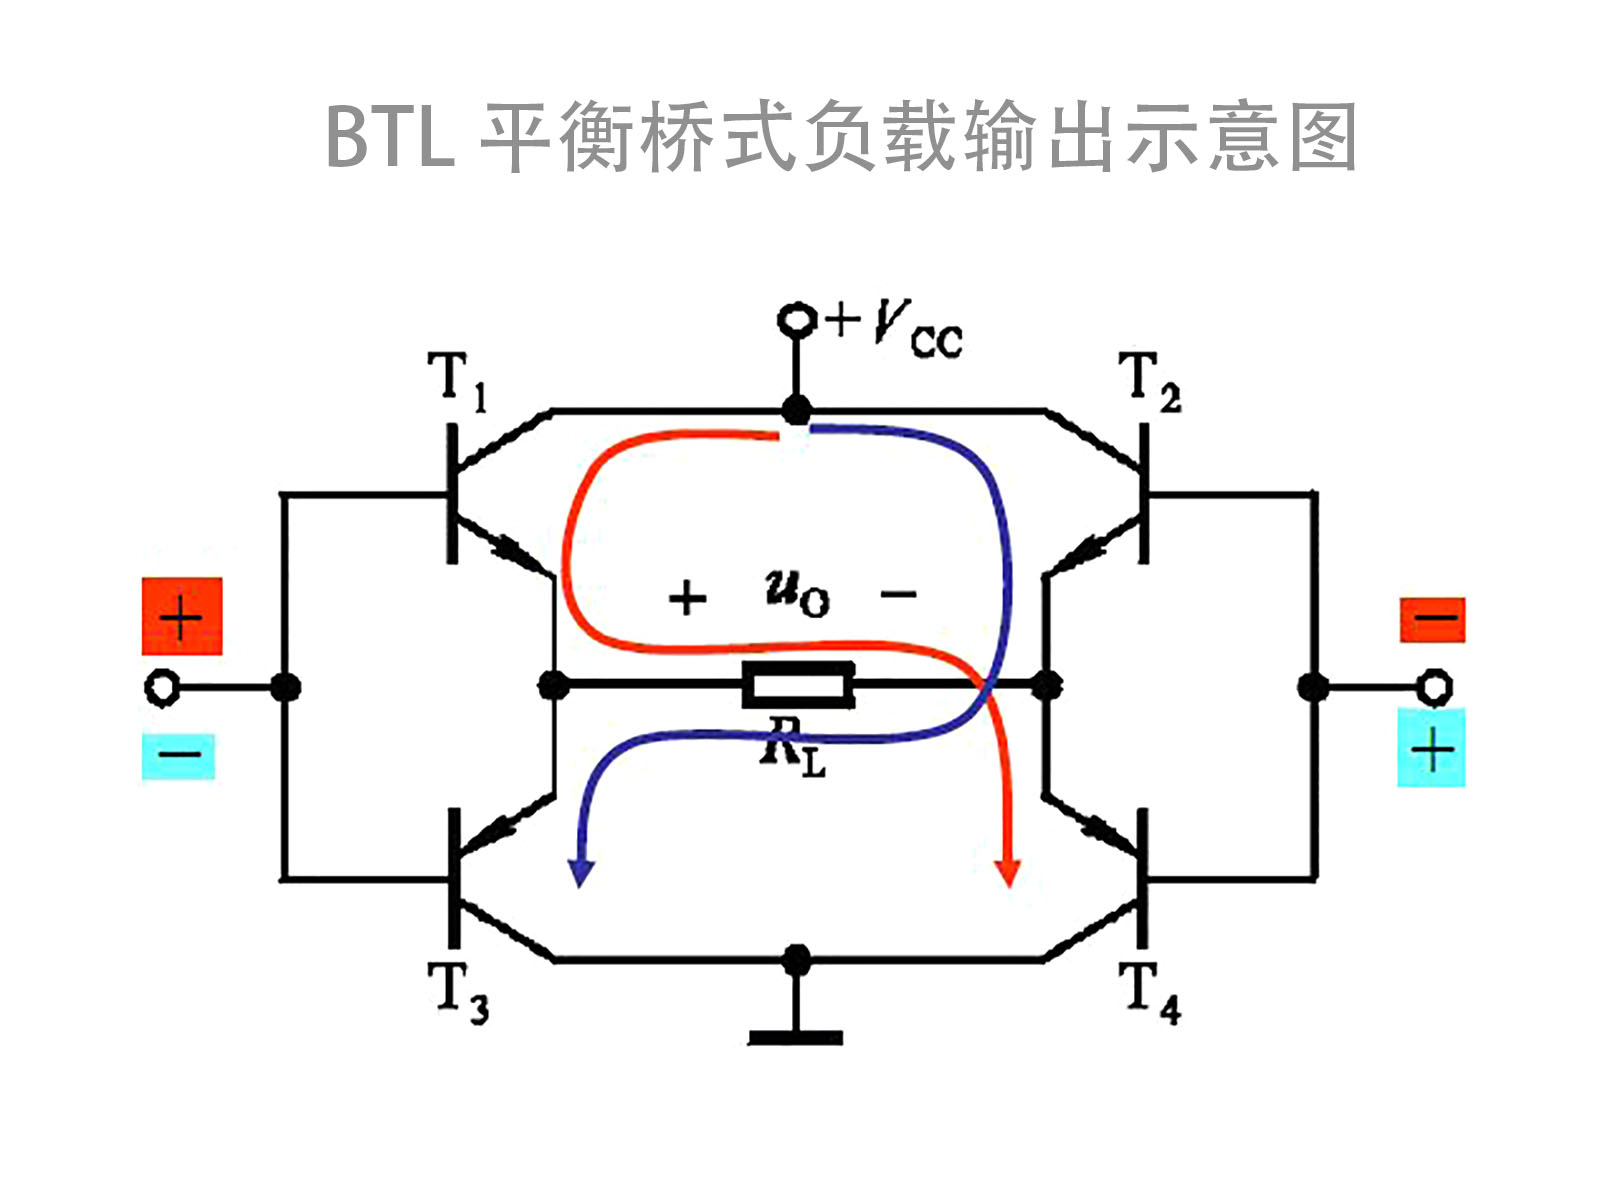 标题btl[balanced transformer less]平衡桥式功放电路示意图 图片